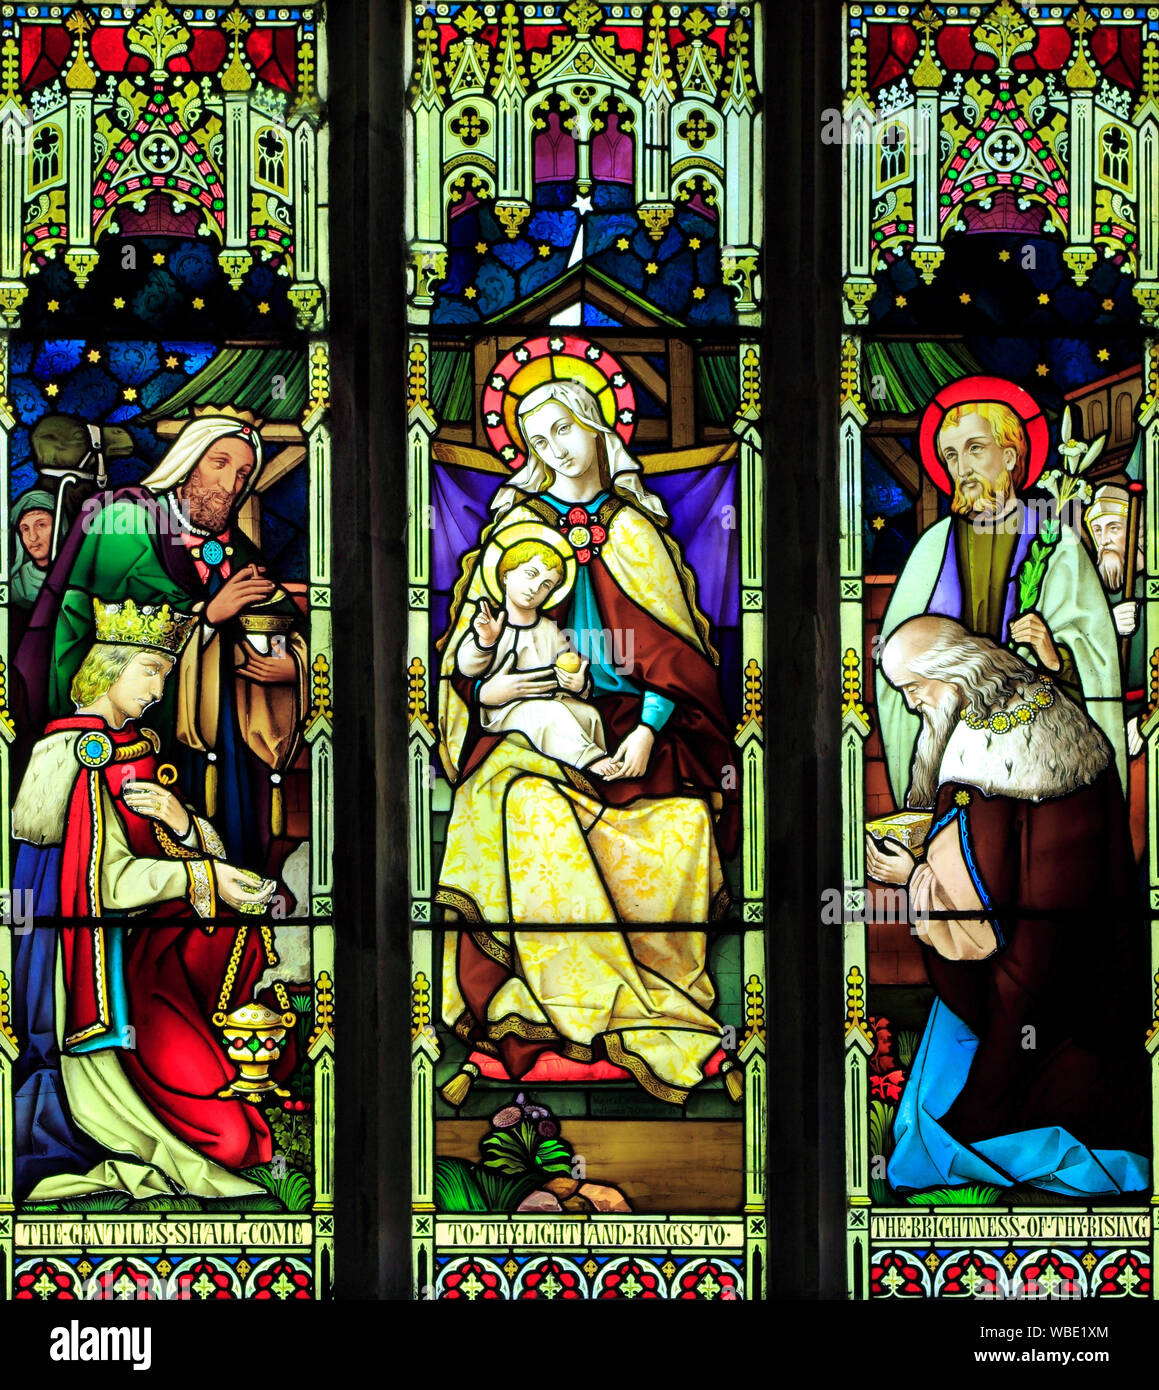 L'Epiphanie, Marie, Jésus, trois rois, sages, vitrail par Mayer & Co., 1873 Brinton, Norfolk, UK Banque D'Images